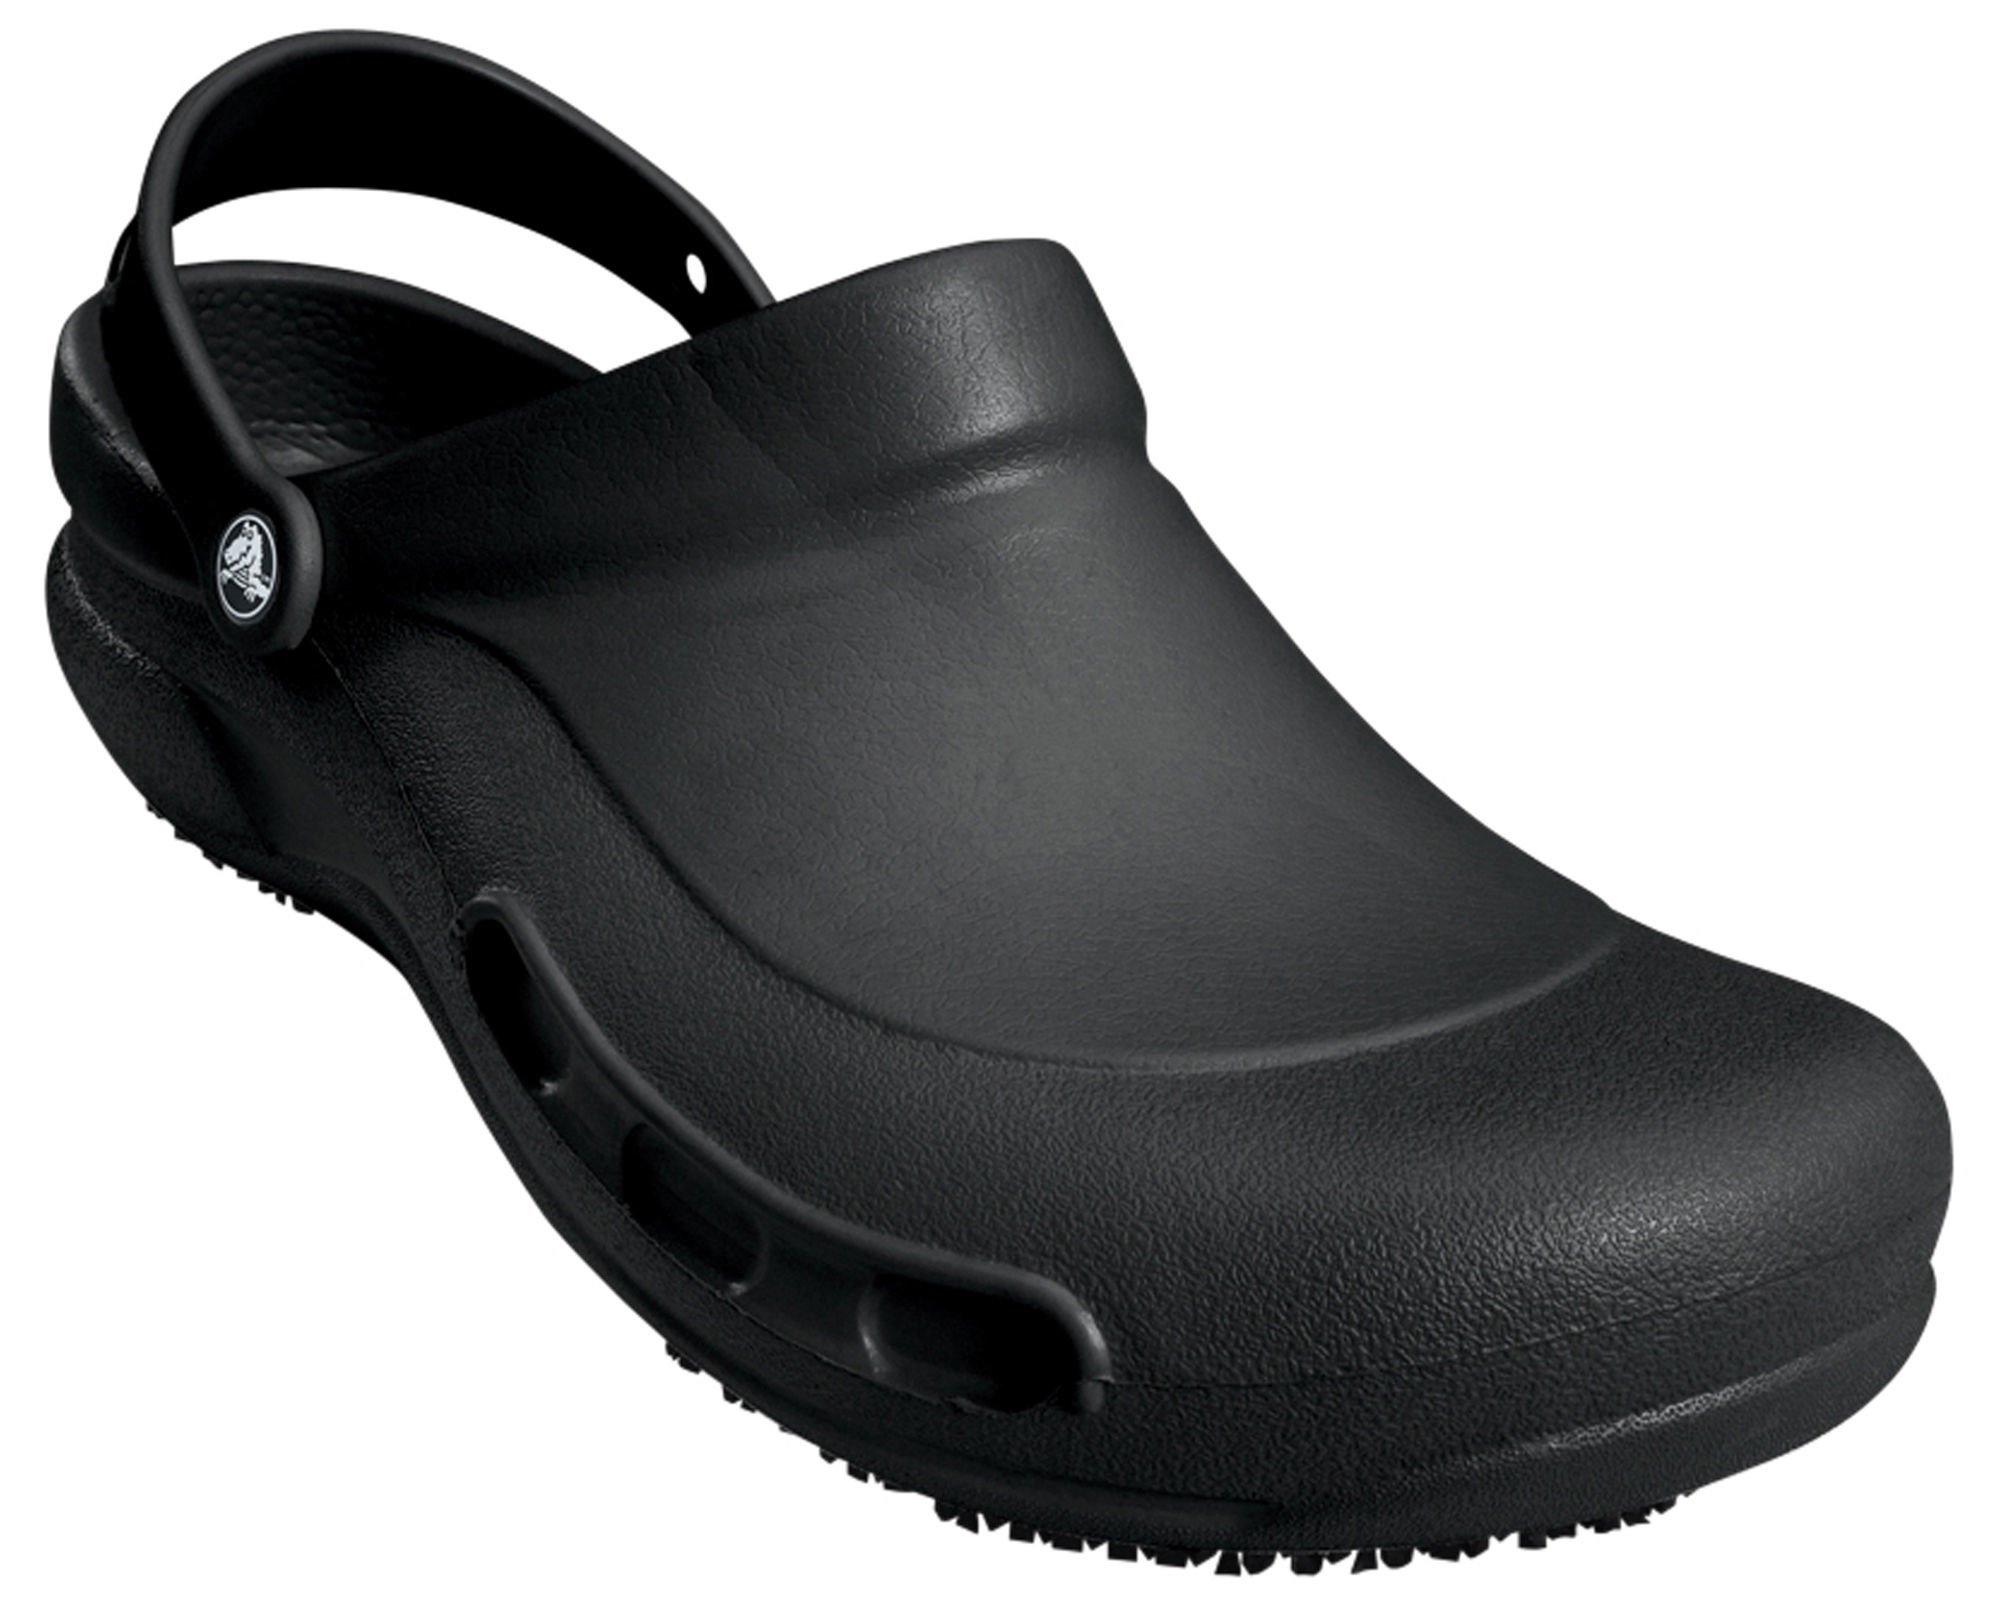 crocs men's work shoes